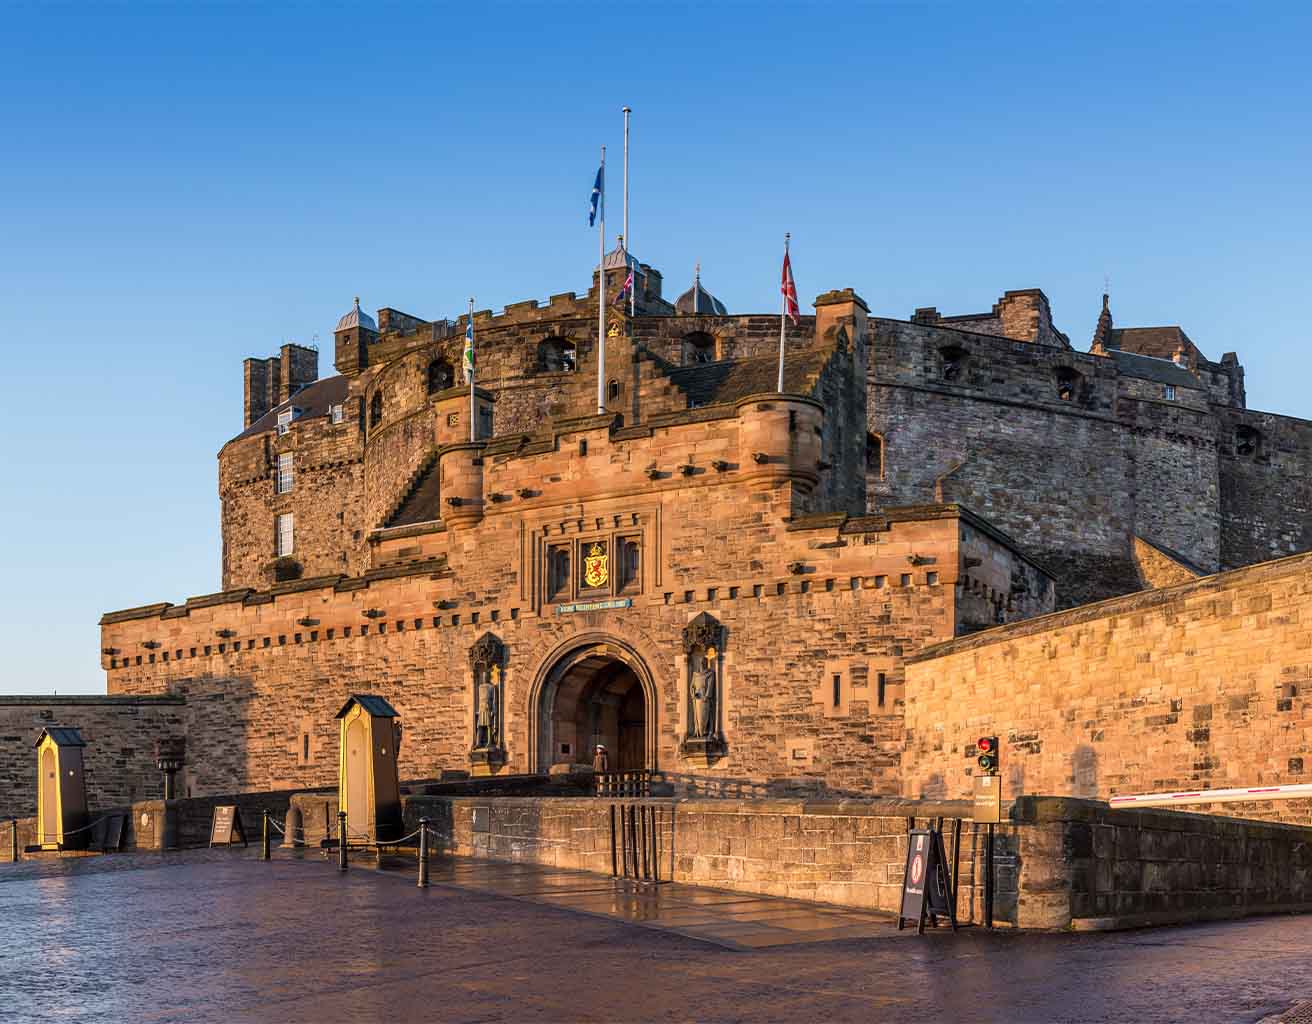 Edinburgh Castle 